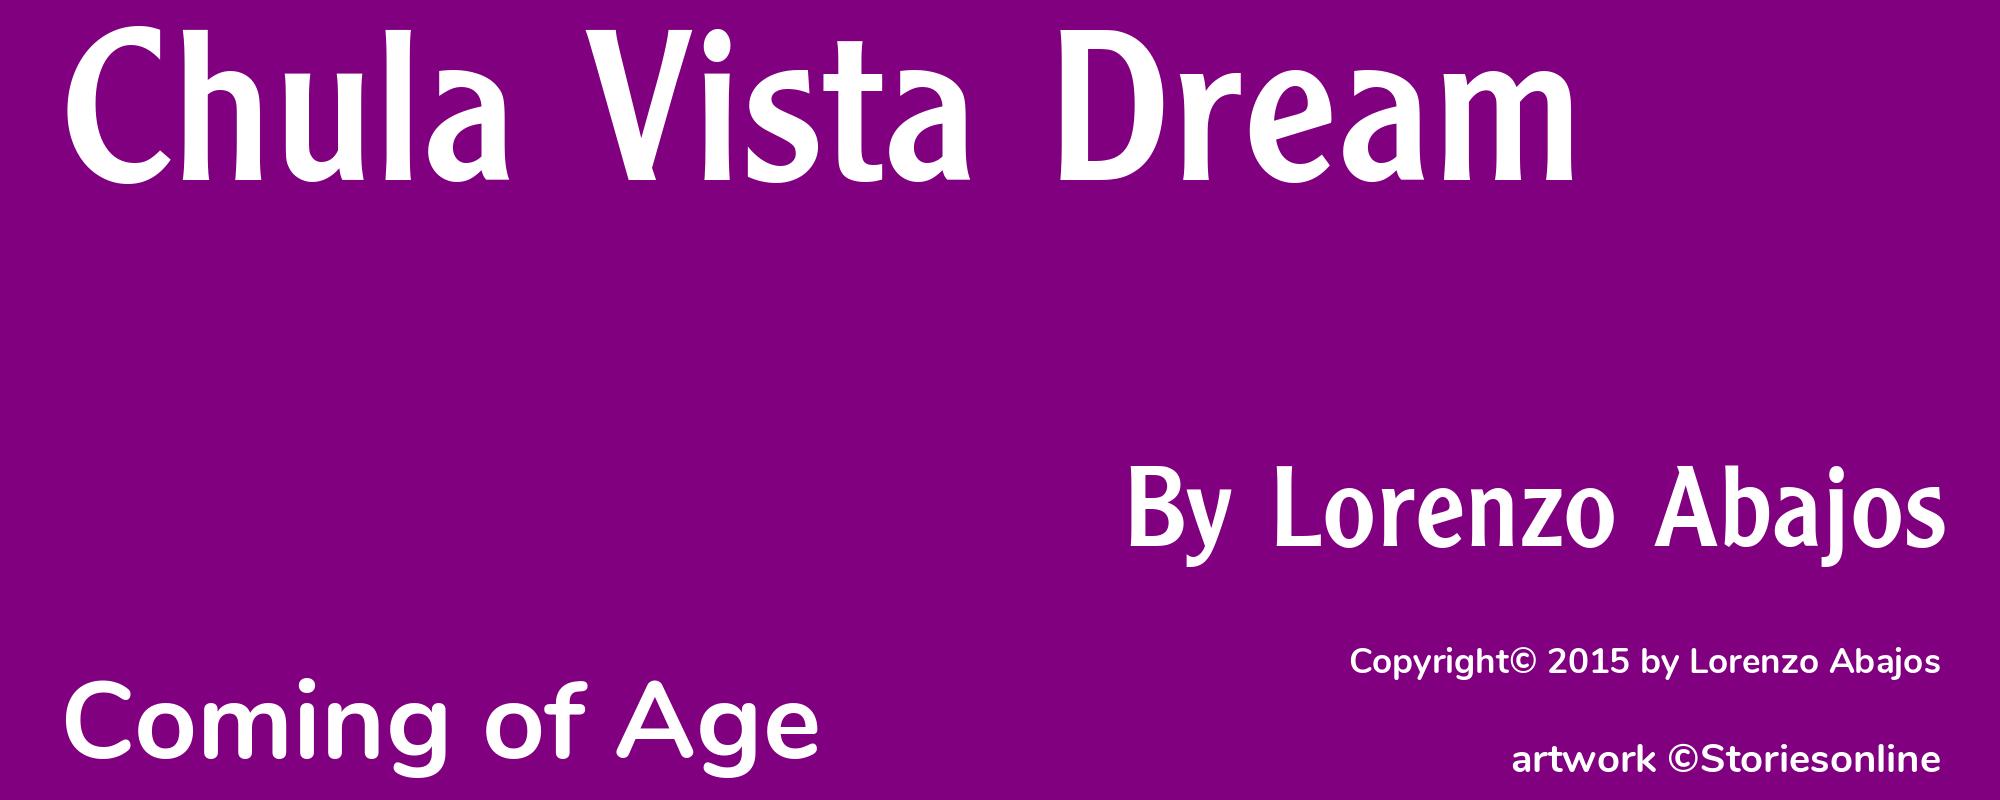 Chula Vista Dream - Cover